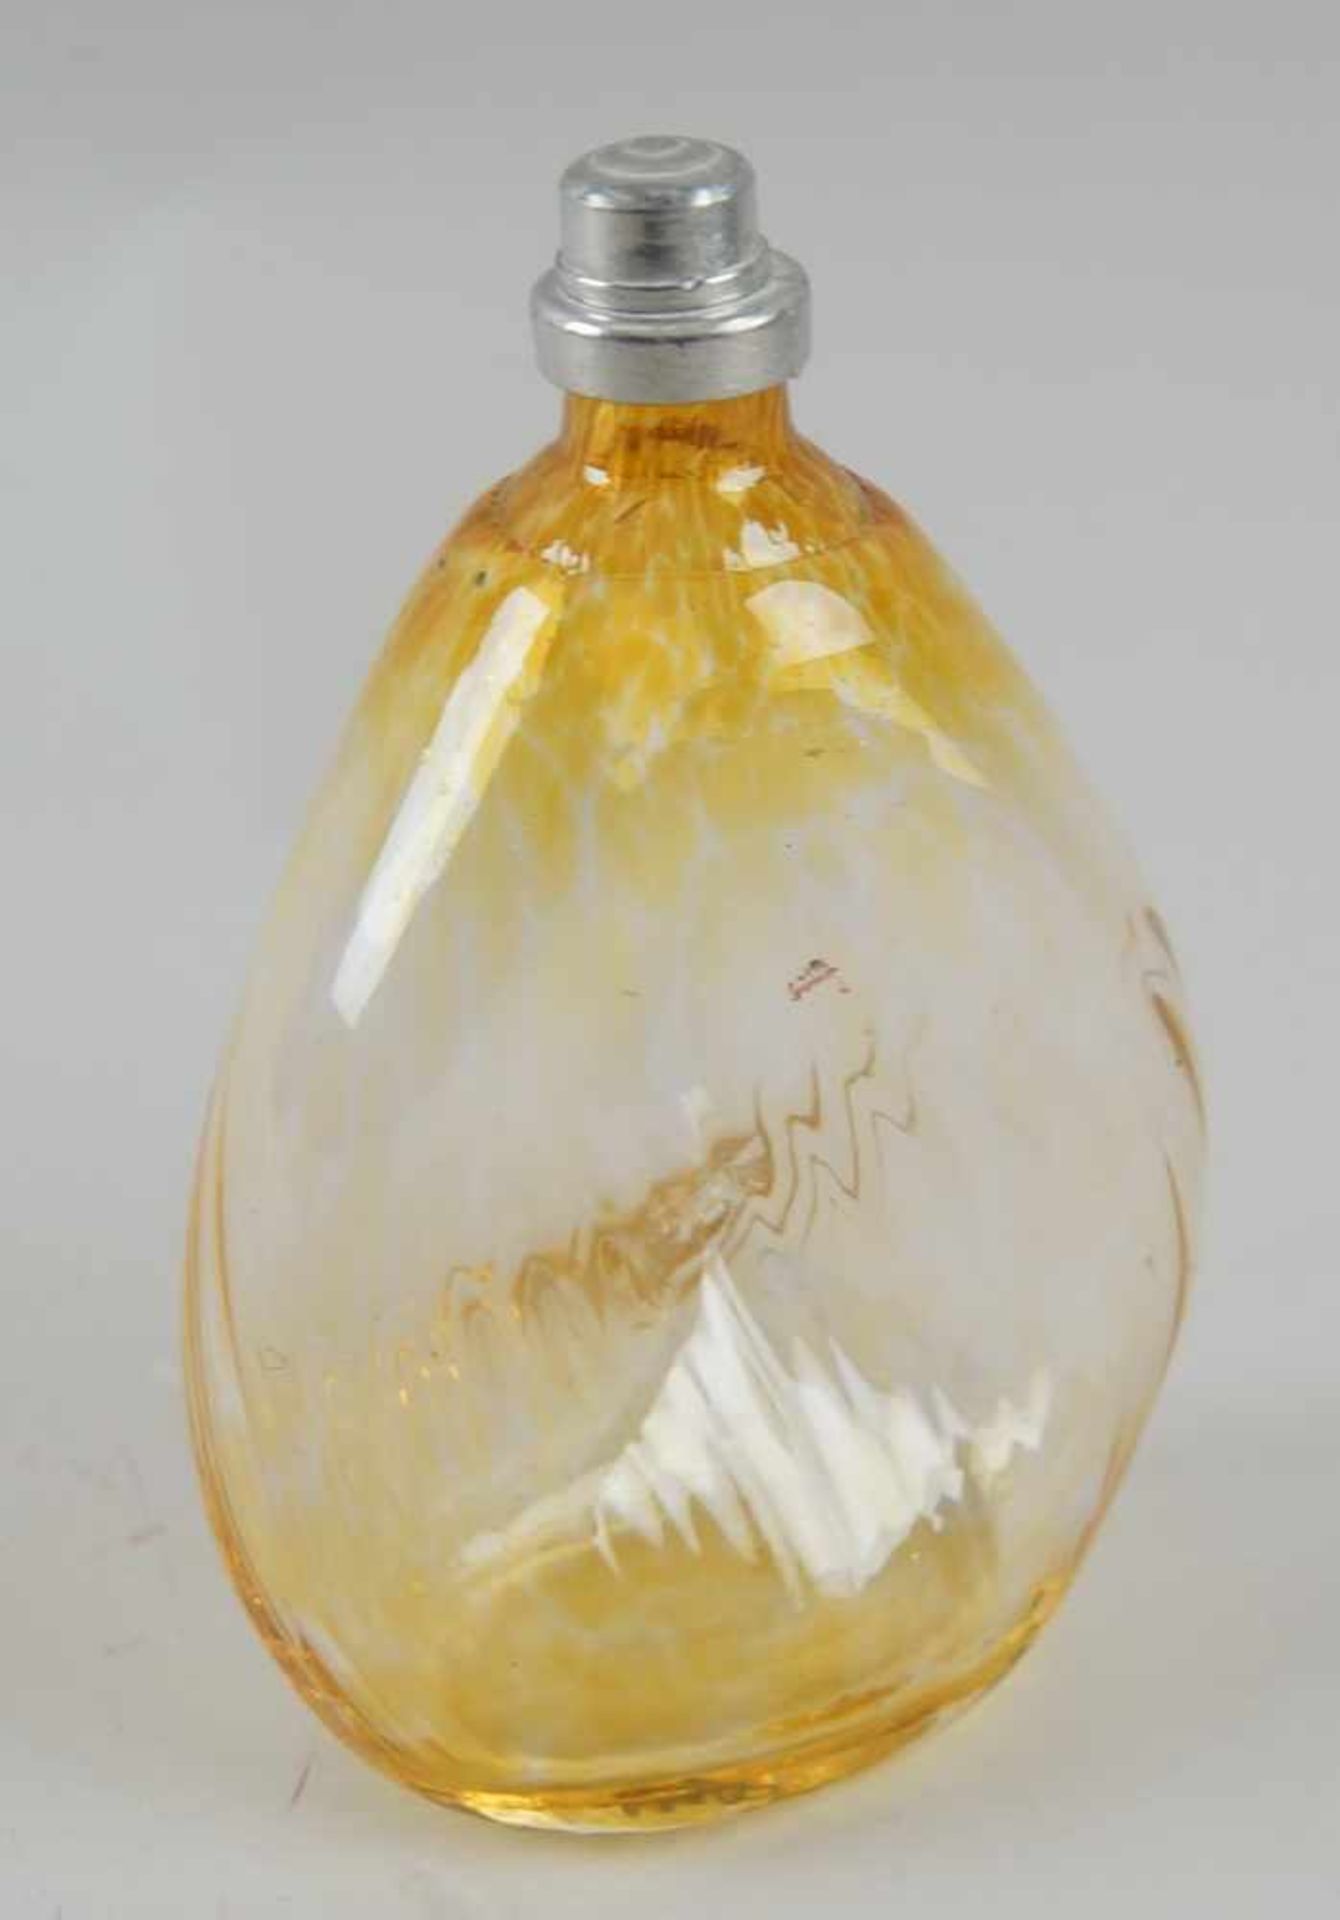 Gramsacher Nabelflasche, Tirol, ~ 1900, gelbliches Glas, H 18 cm - Bild 2 aus 7